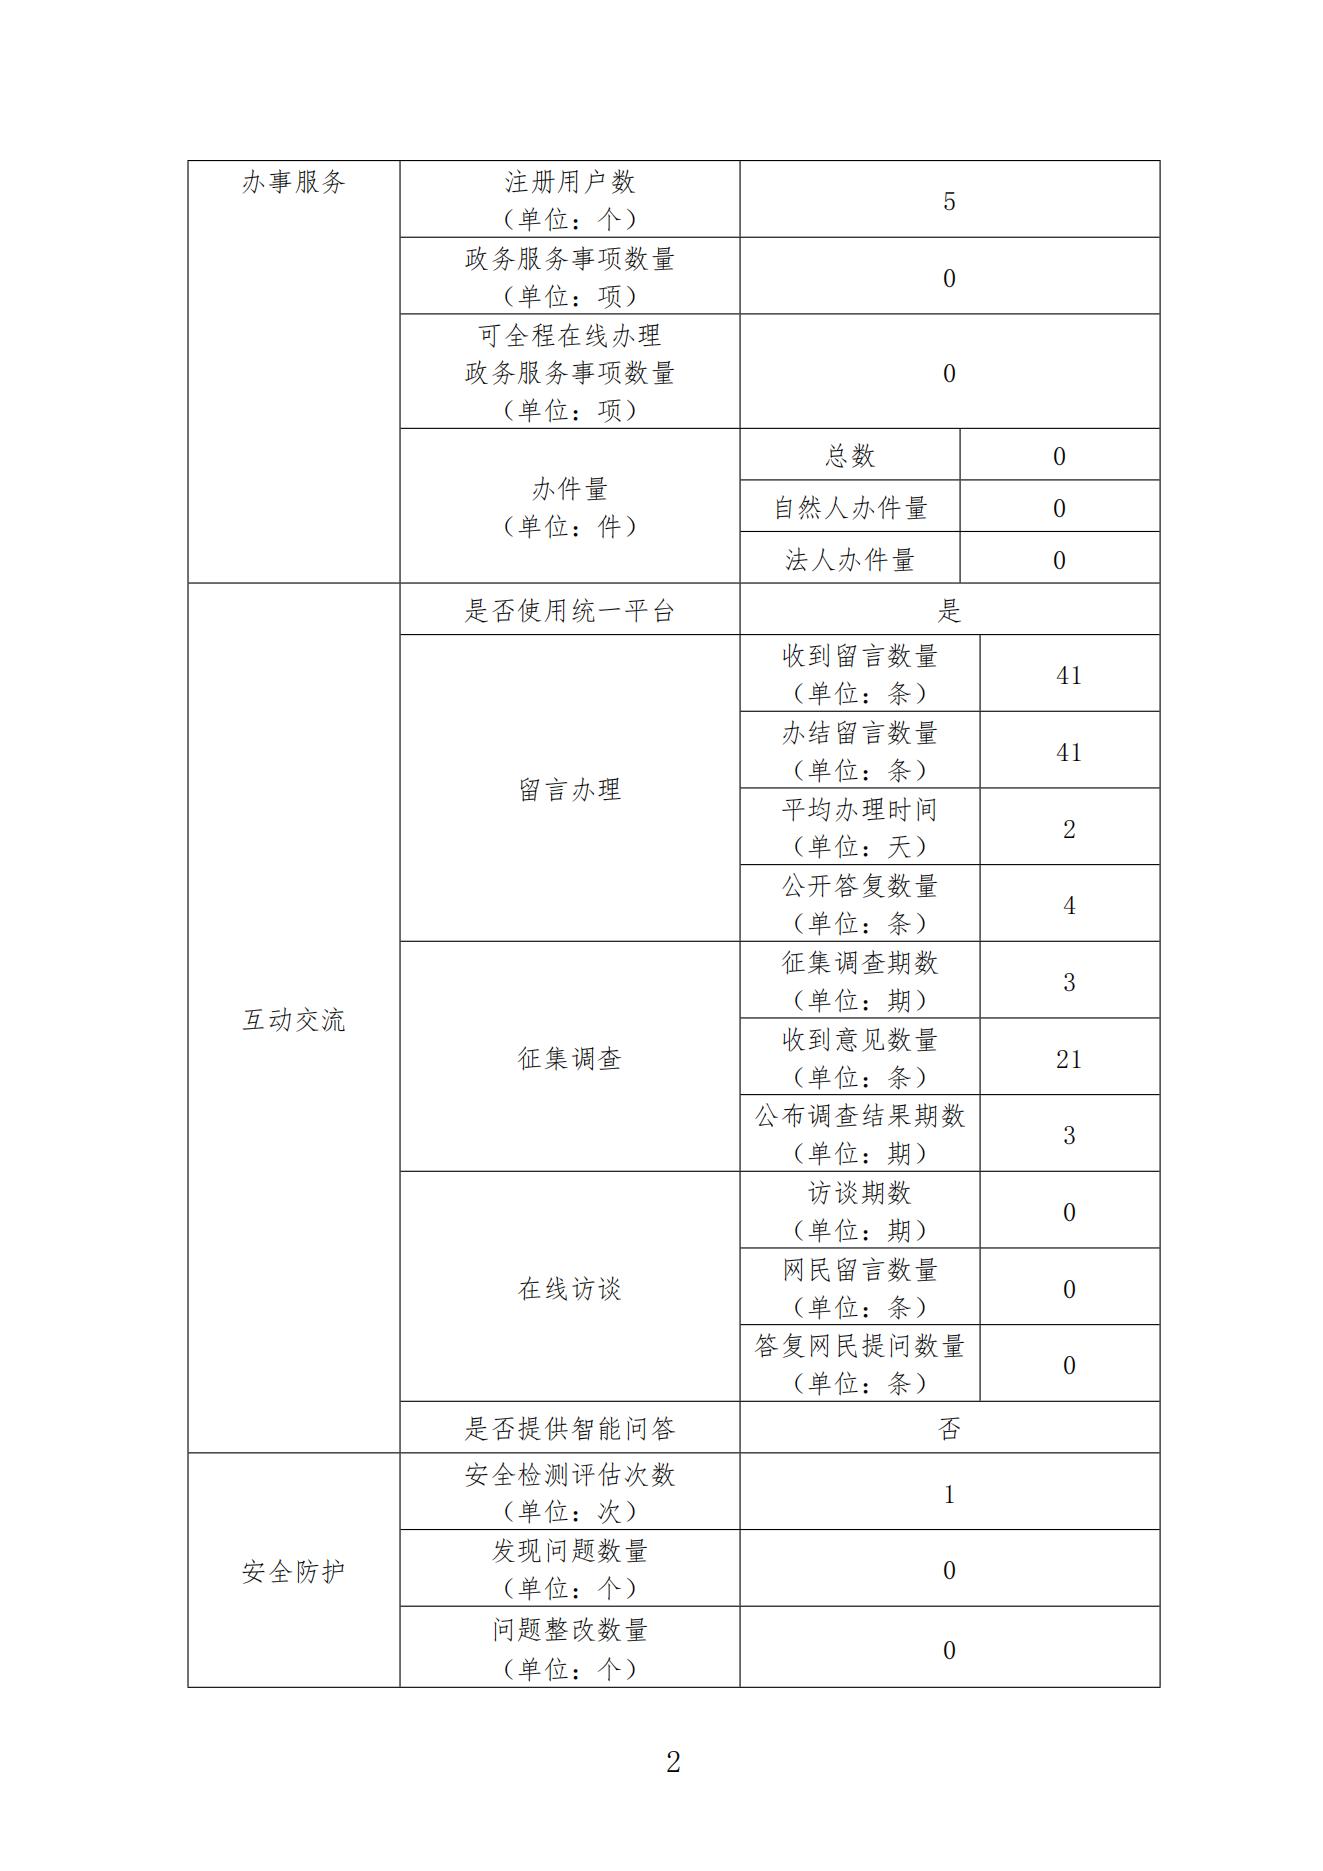 东莞监狱2021年政府网站工作年度报表_01.jpg